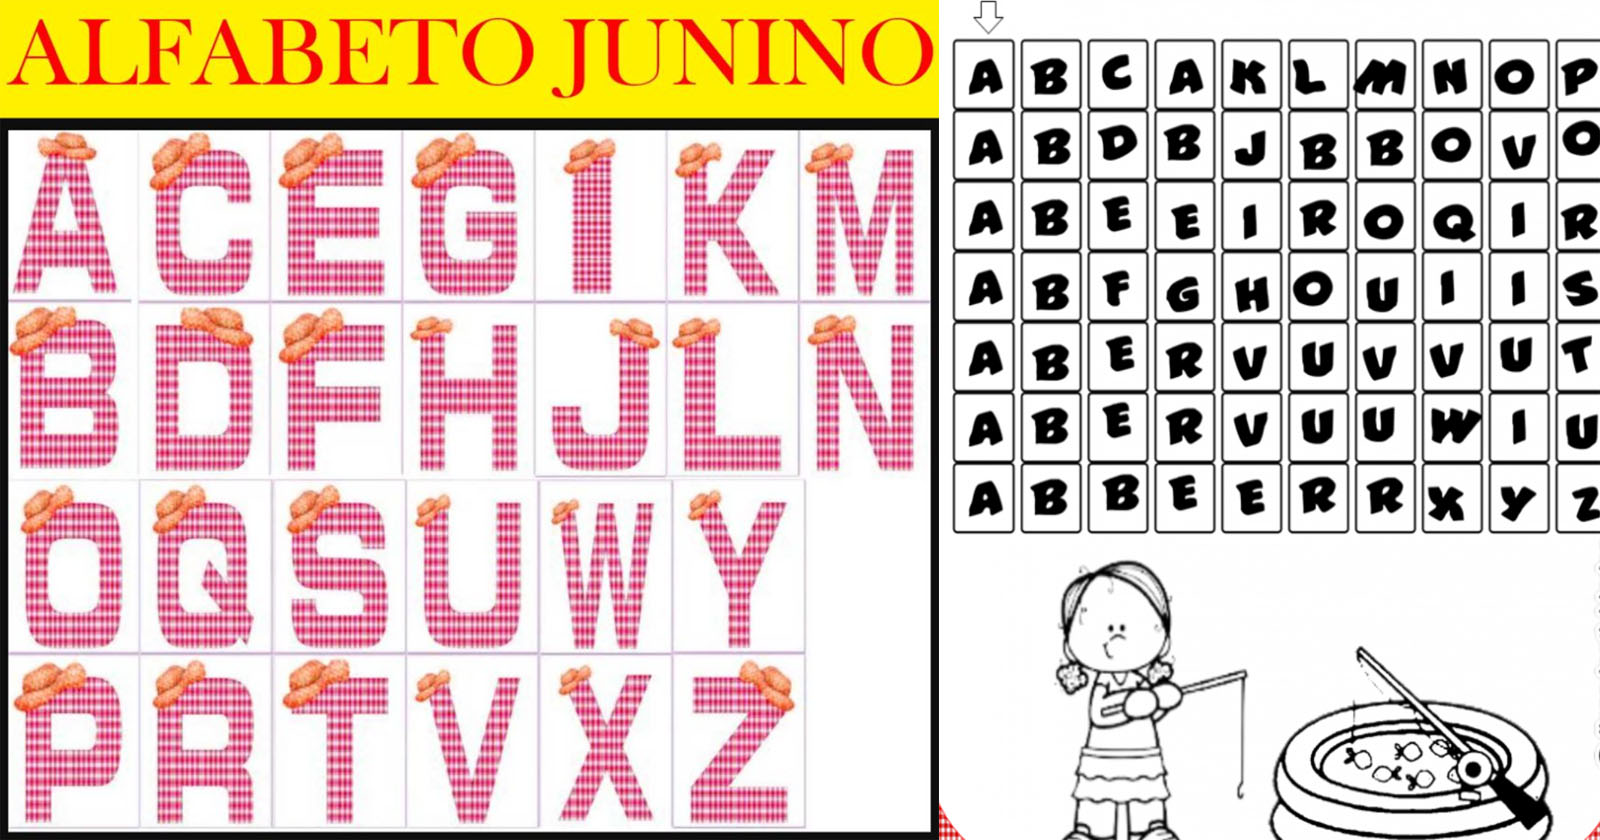 Alfabeto junino para imprimir e usar em decorações da festa de São João